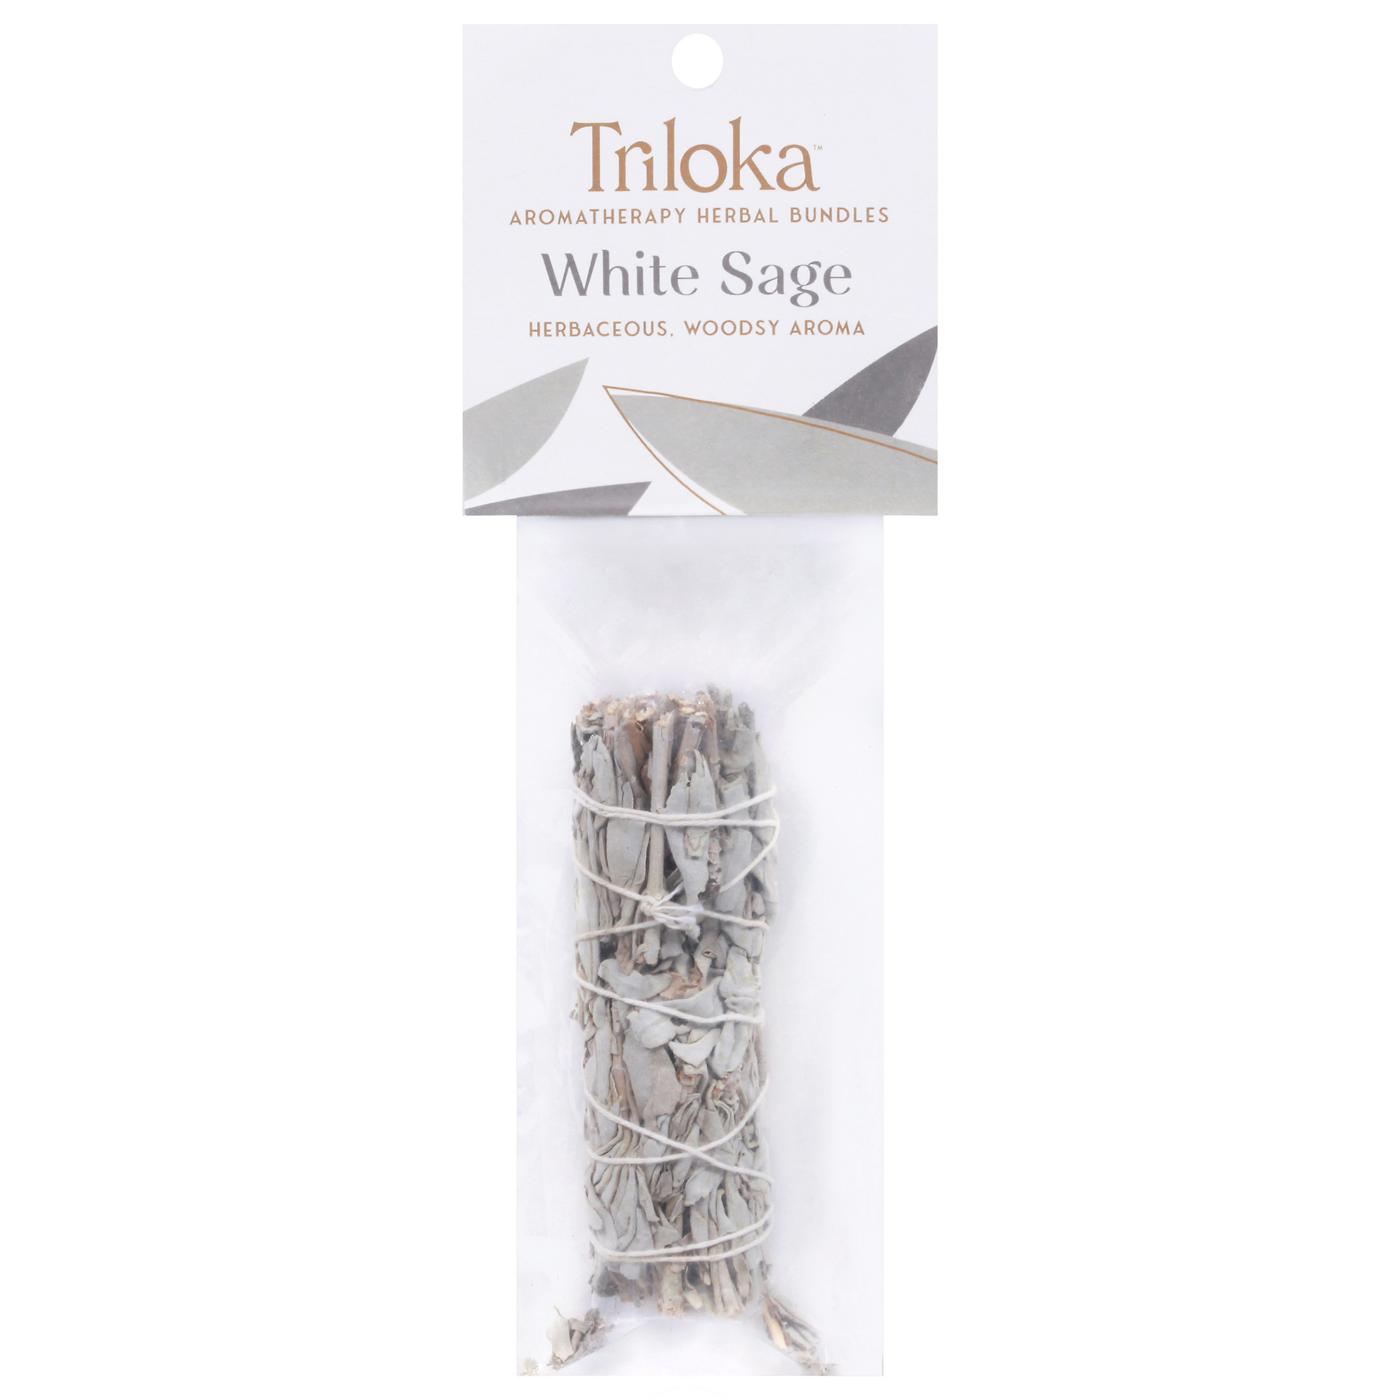 Windrose Trikola White Sage Aromatherapy Herbal Bundle; image 1 of 2